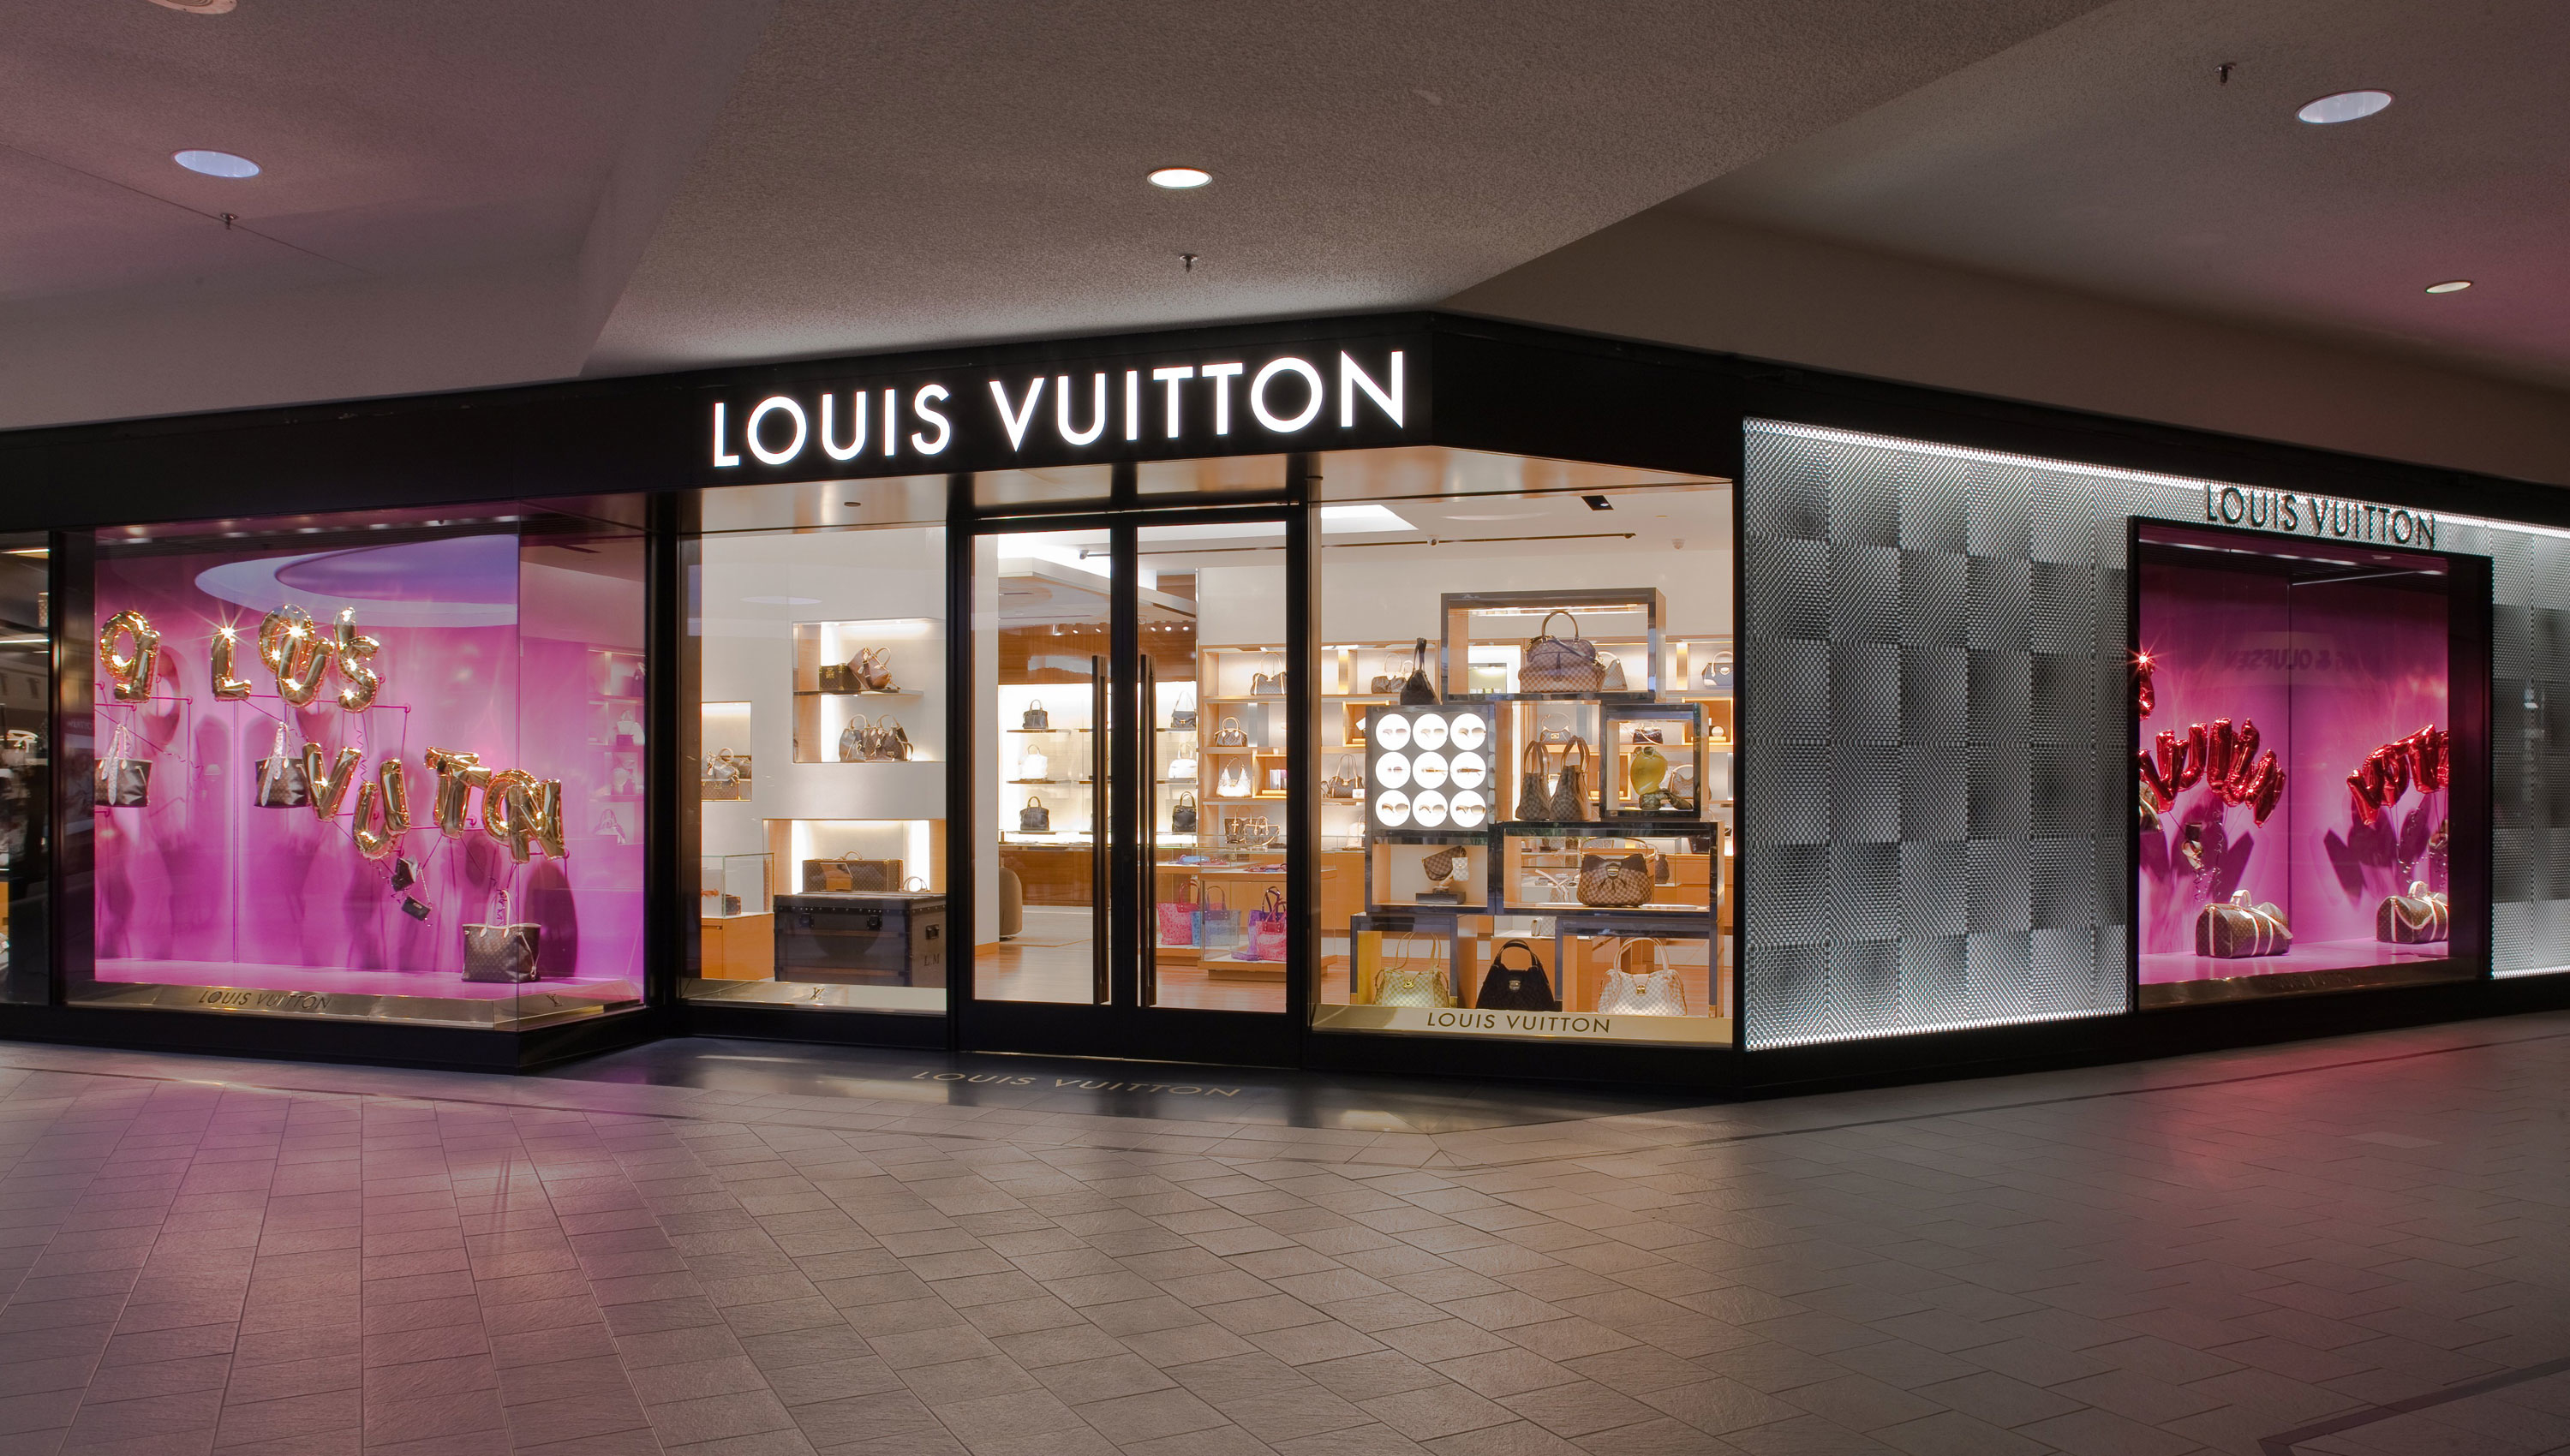 Louis Vuitton Minneapolis Edina Galleria Photo